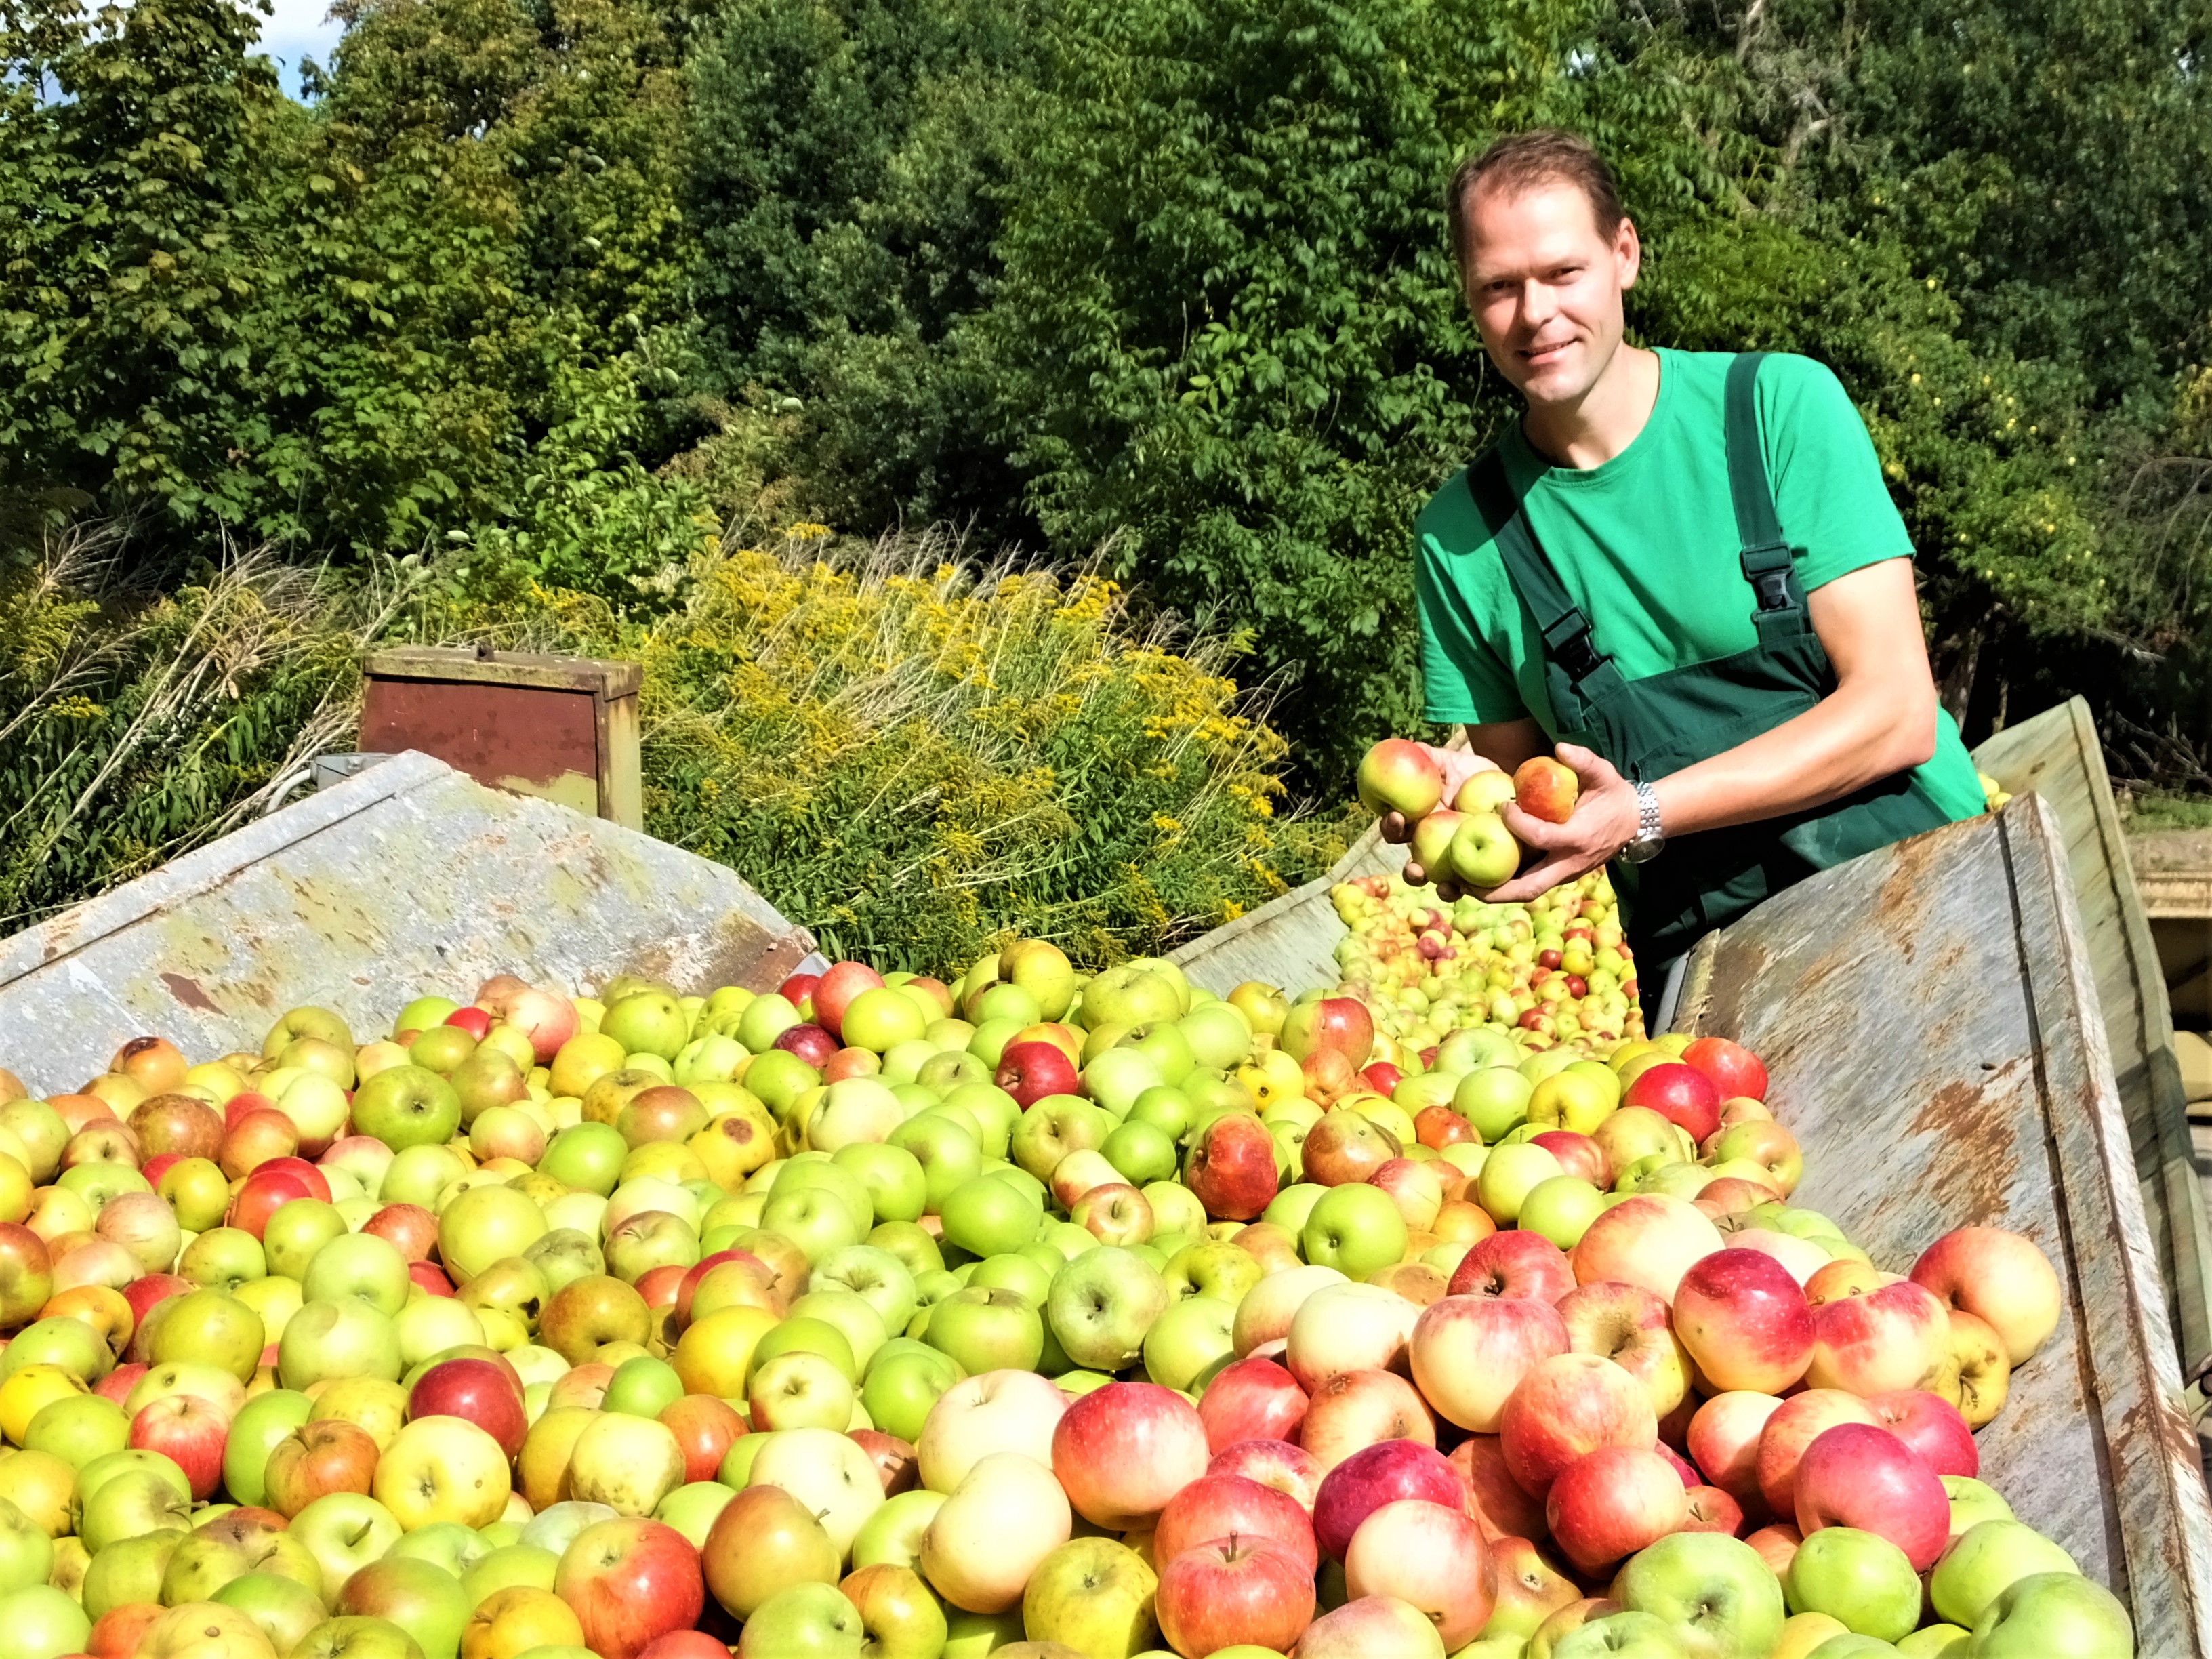 Die diesjährige Apfelschwemme bringt für Martin Wietz, Chef von "Kyritzer Fruchtsäfte", reichlich Arbeit.

